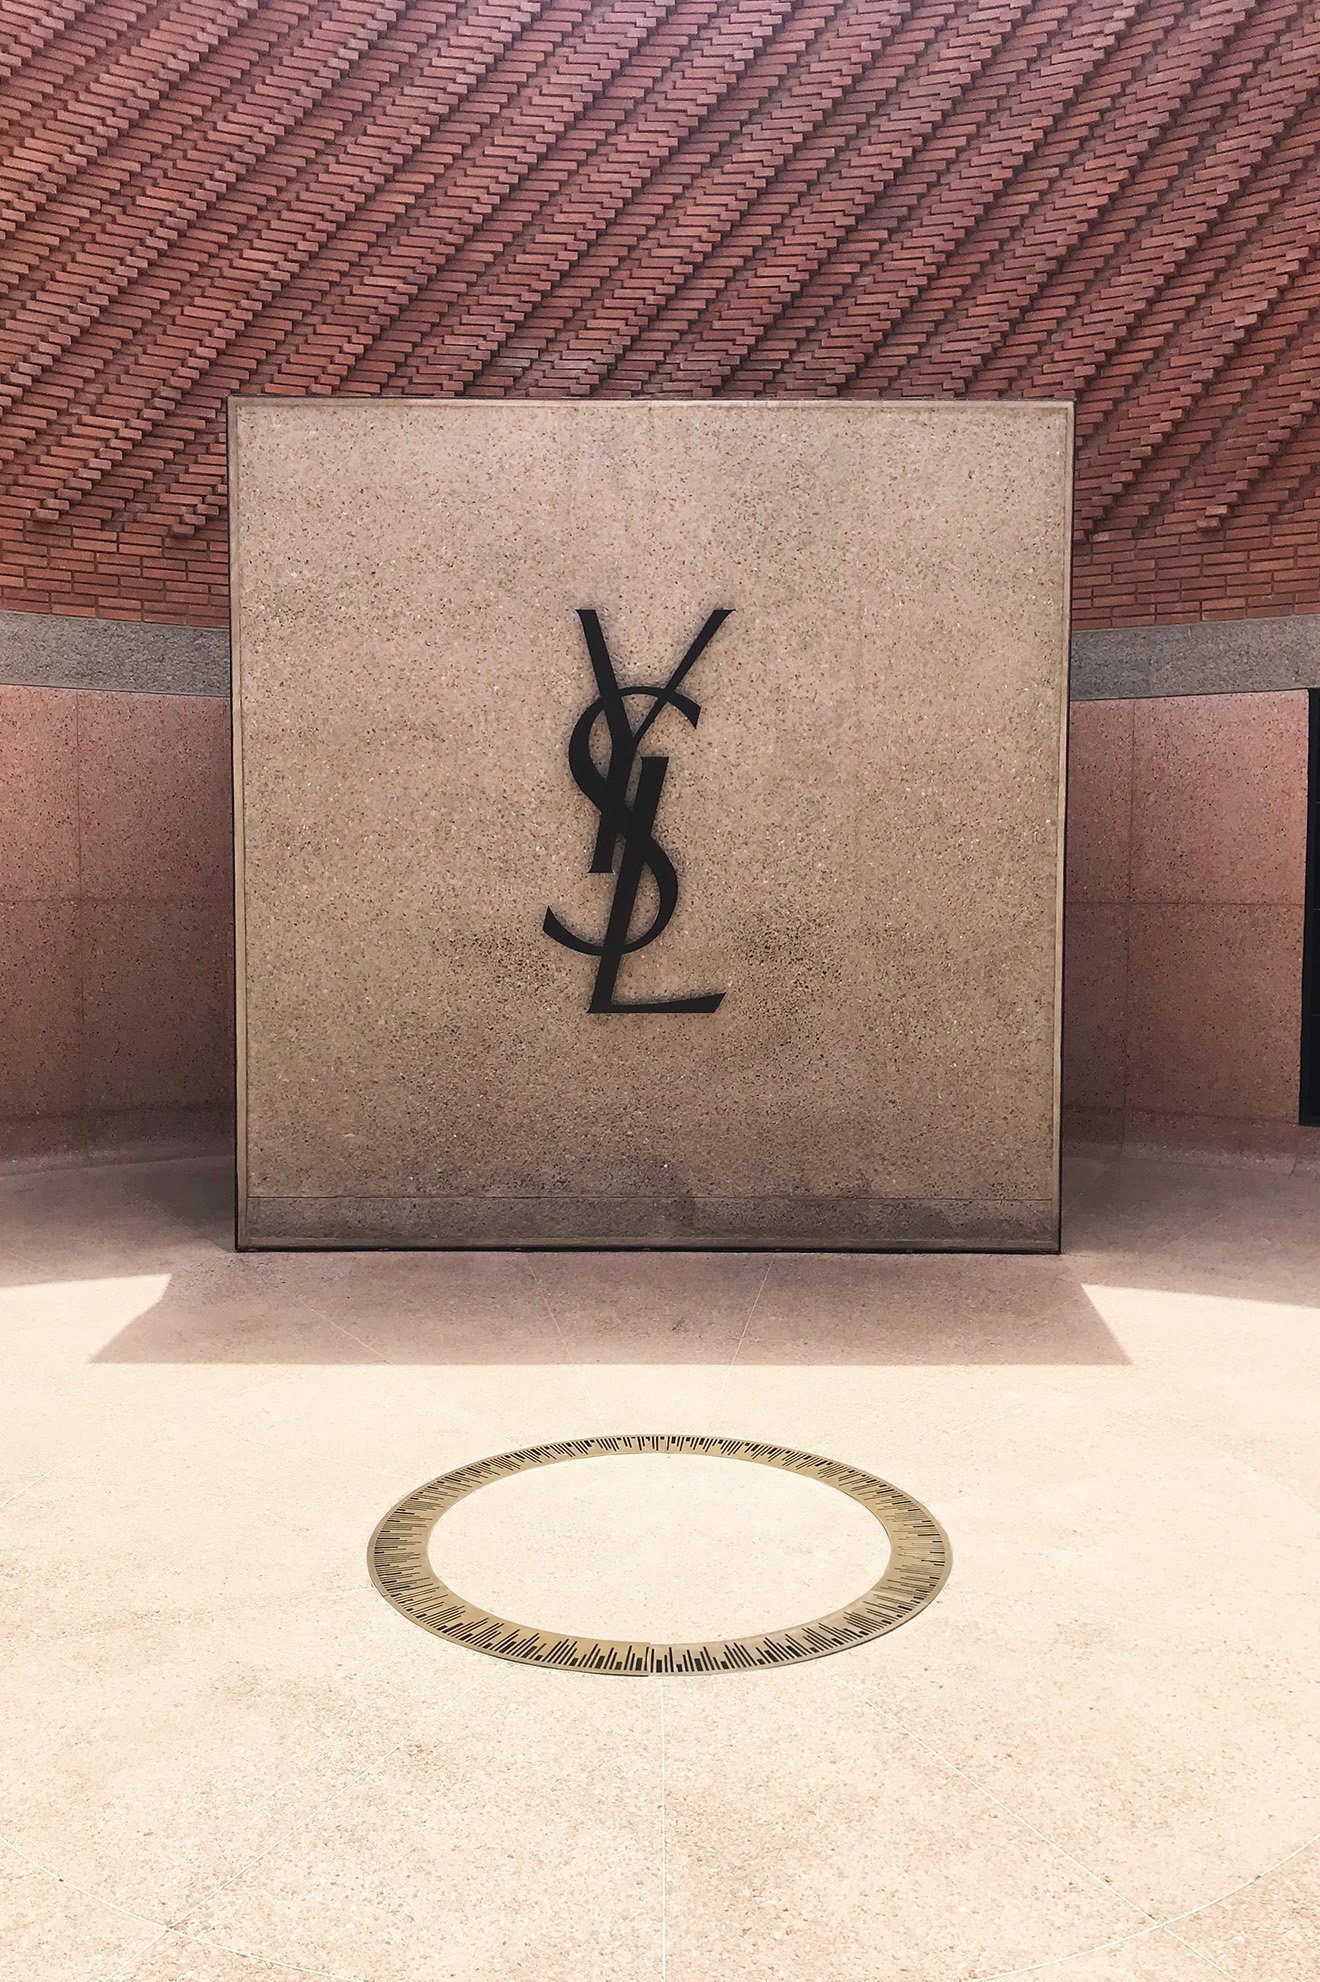 Jardin Majorelle Marrakech Inspirant Yves Saint Laurent Museum In Marrakech Awarded at Design